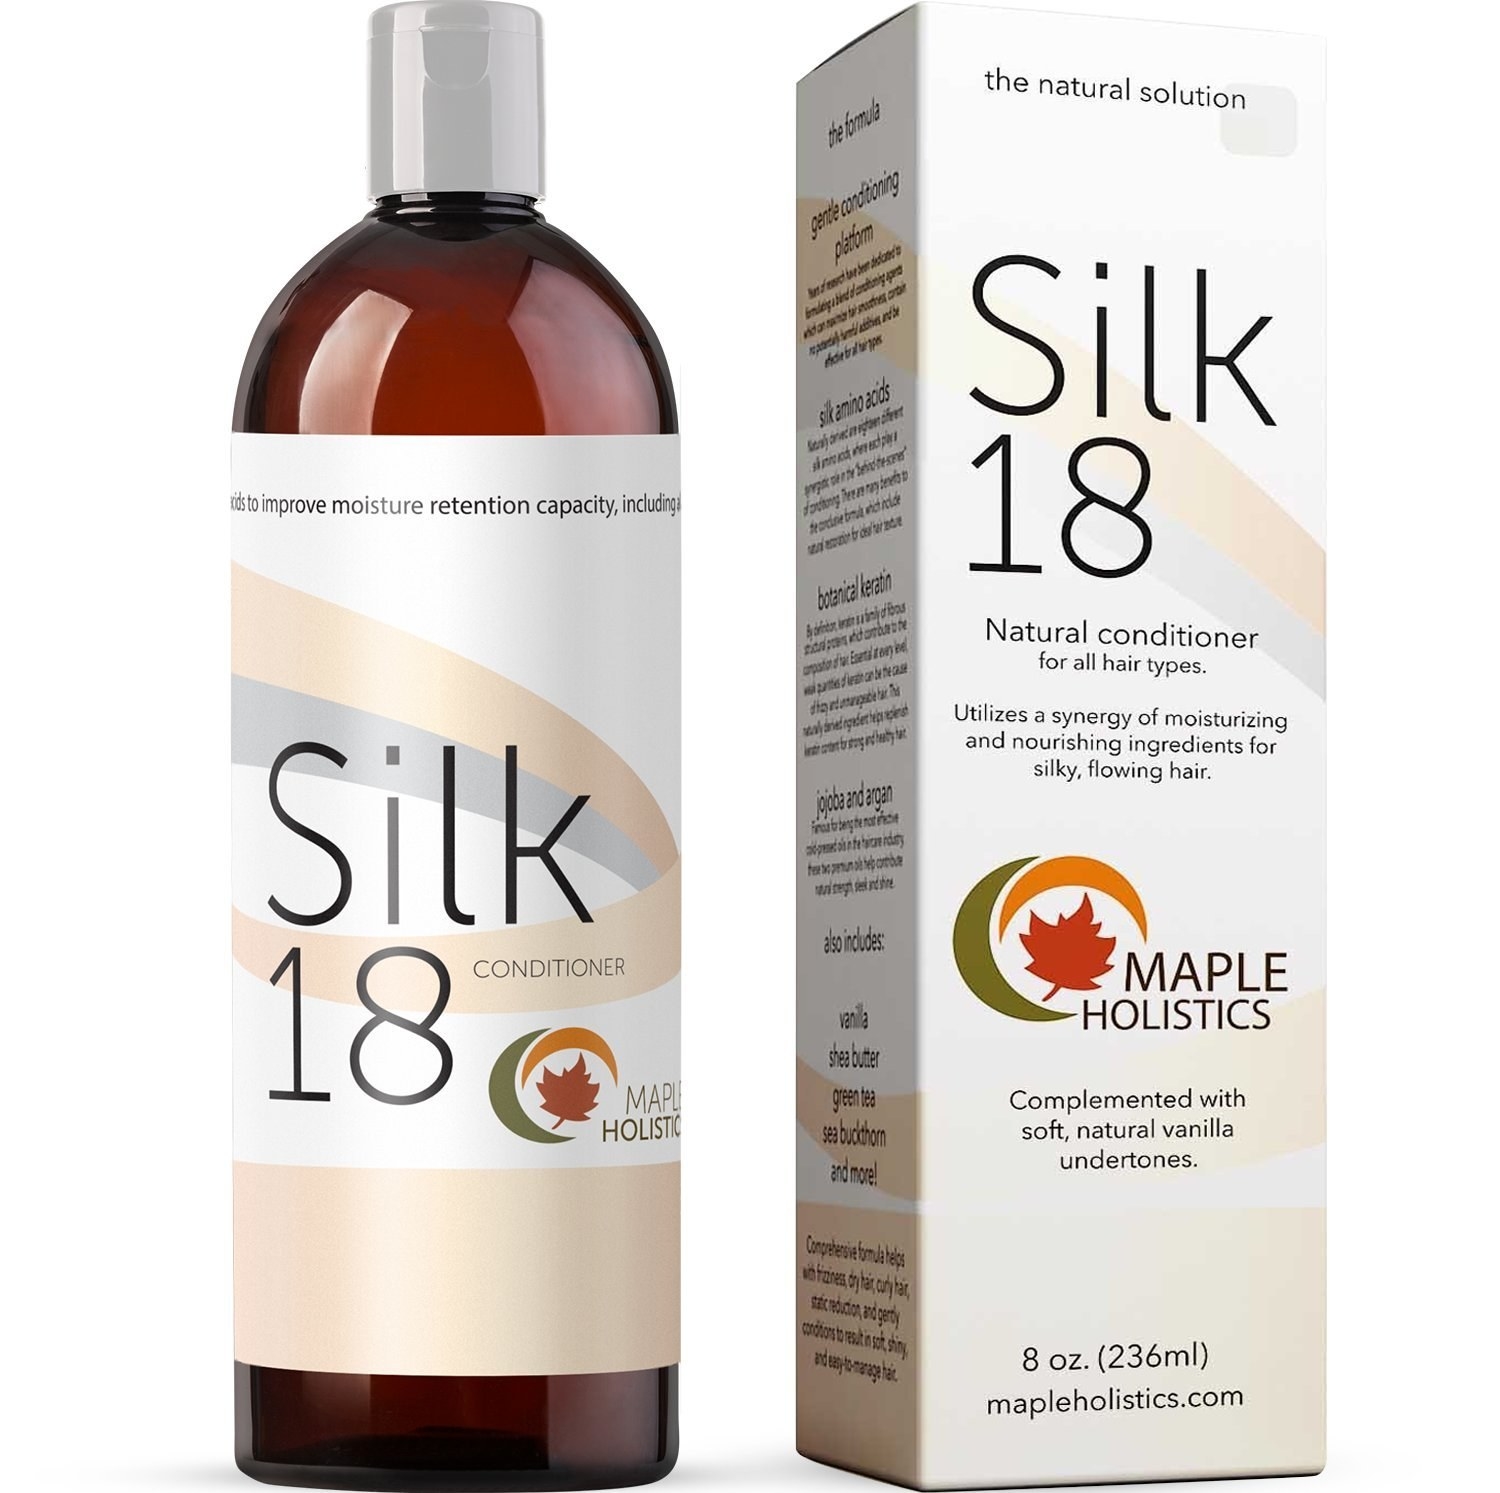 bottle called silk 18 